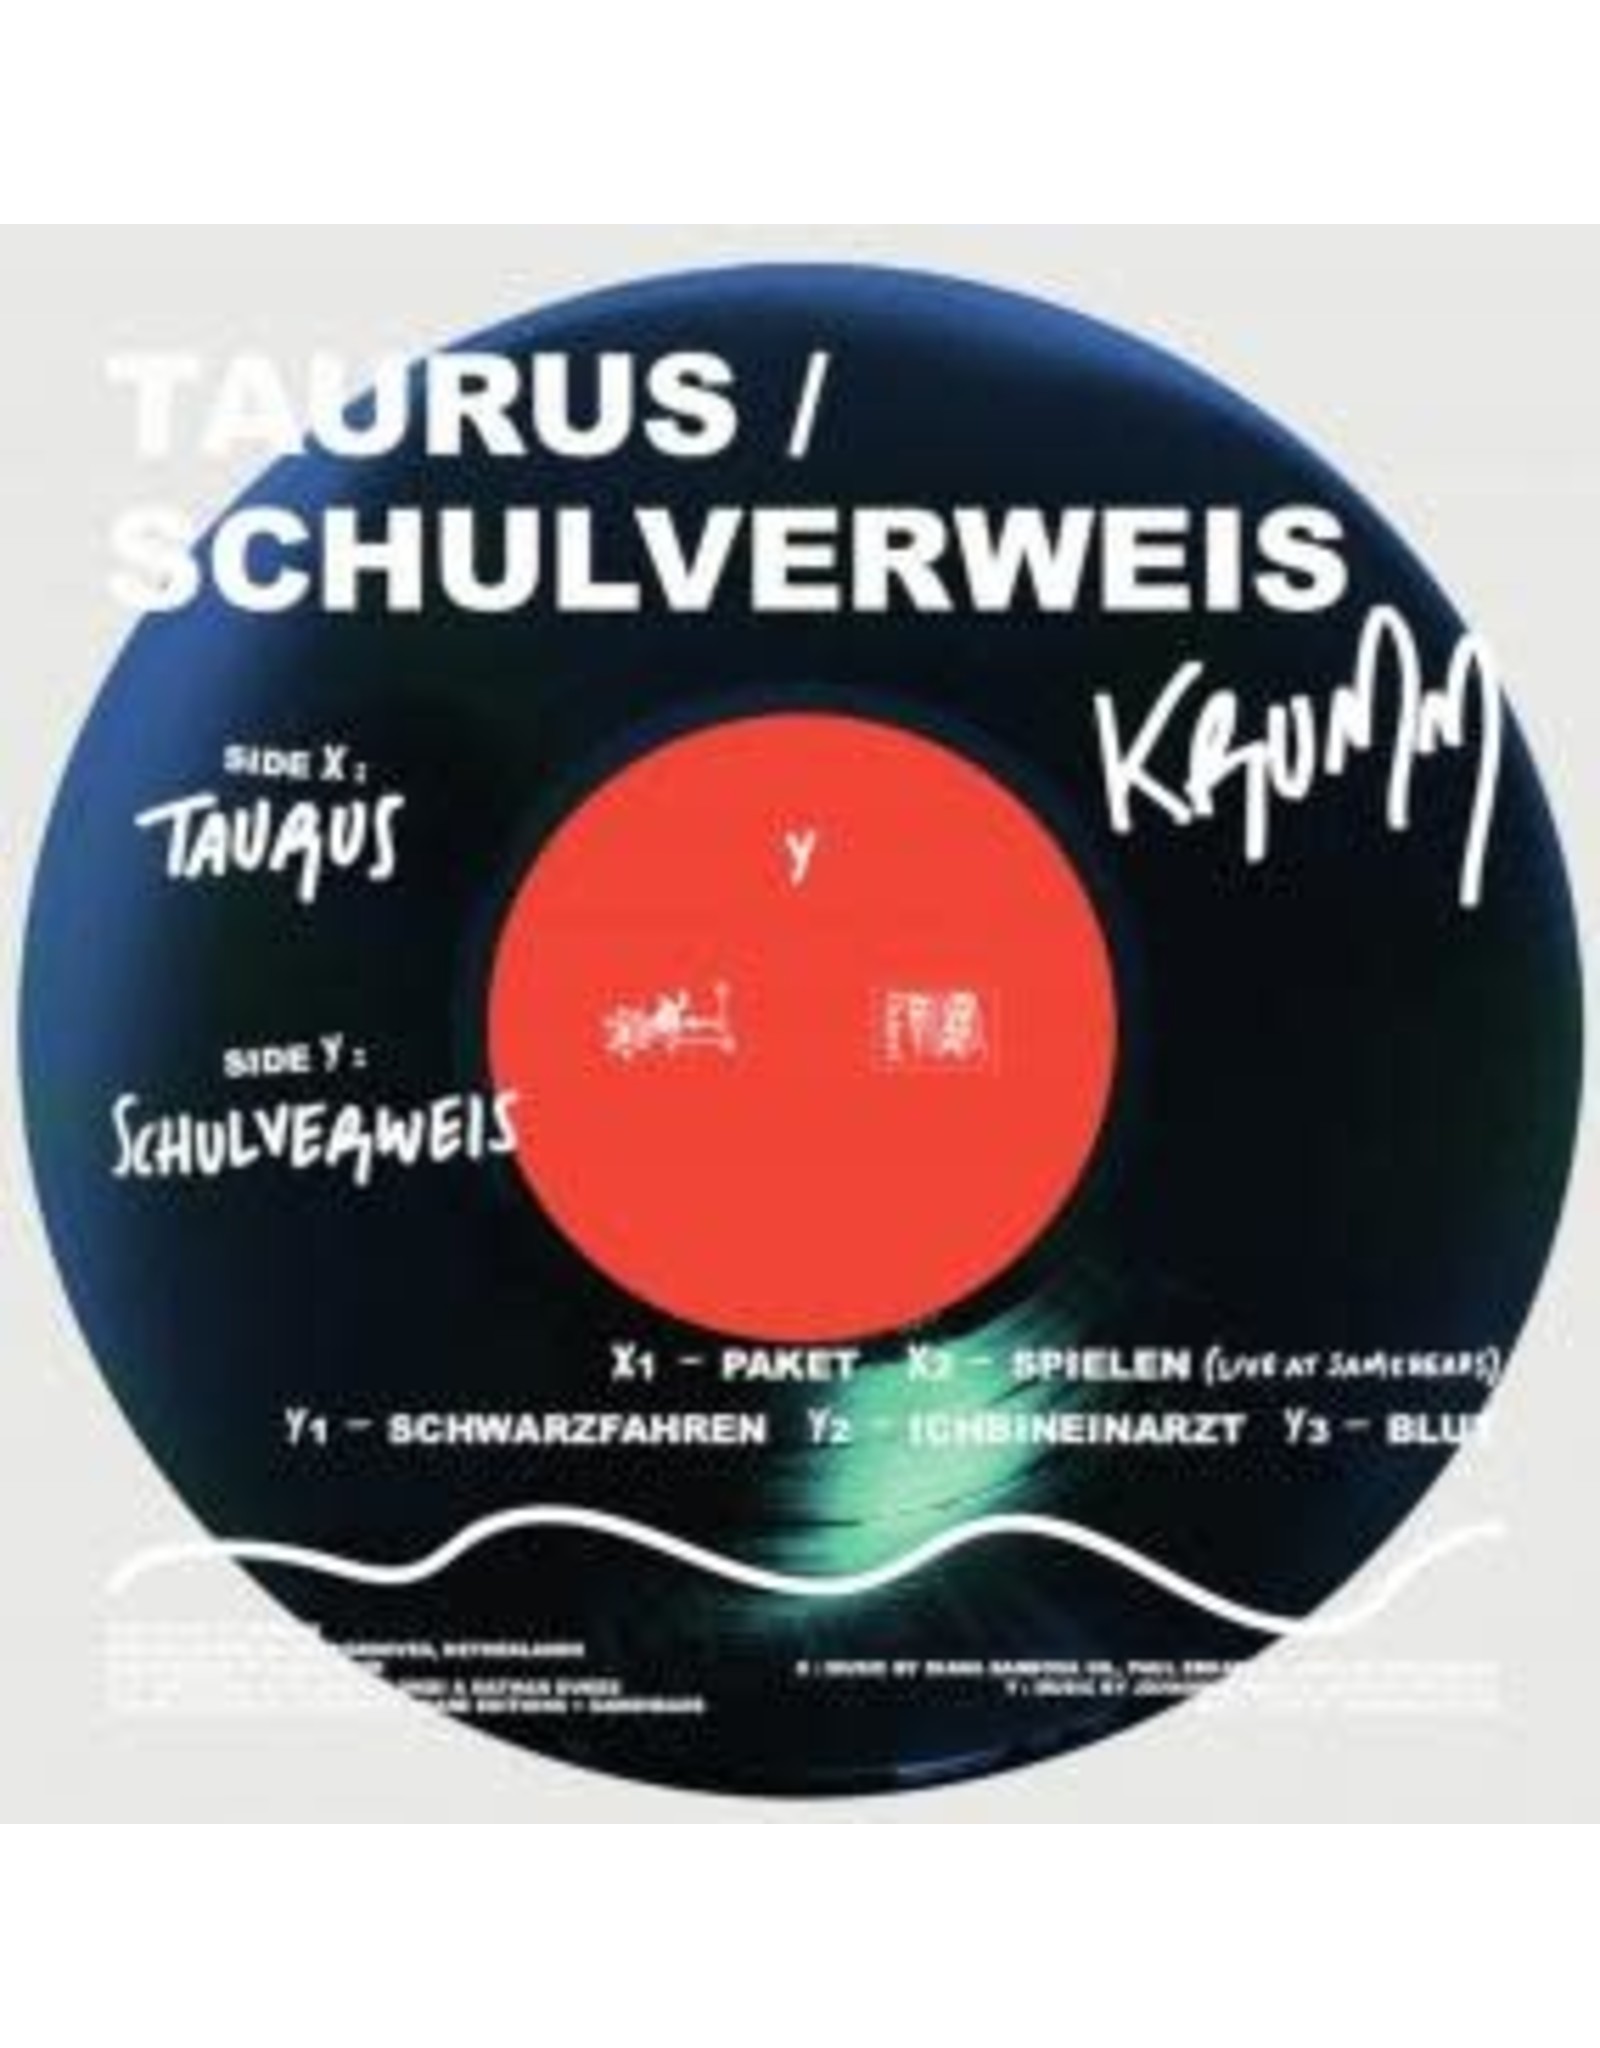 Osare Taurus / Schulverweis: Krumm LP